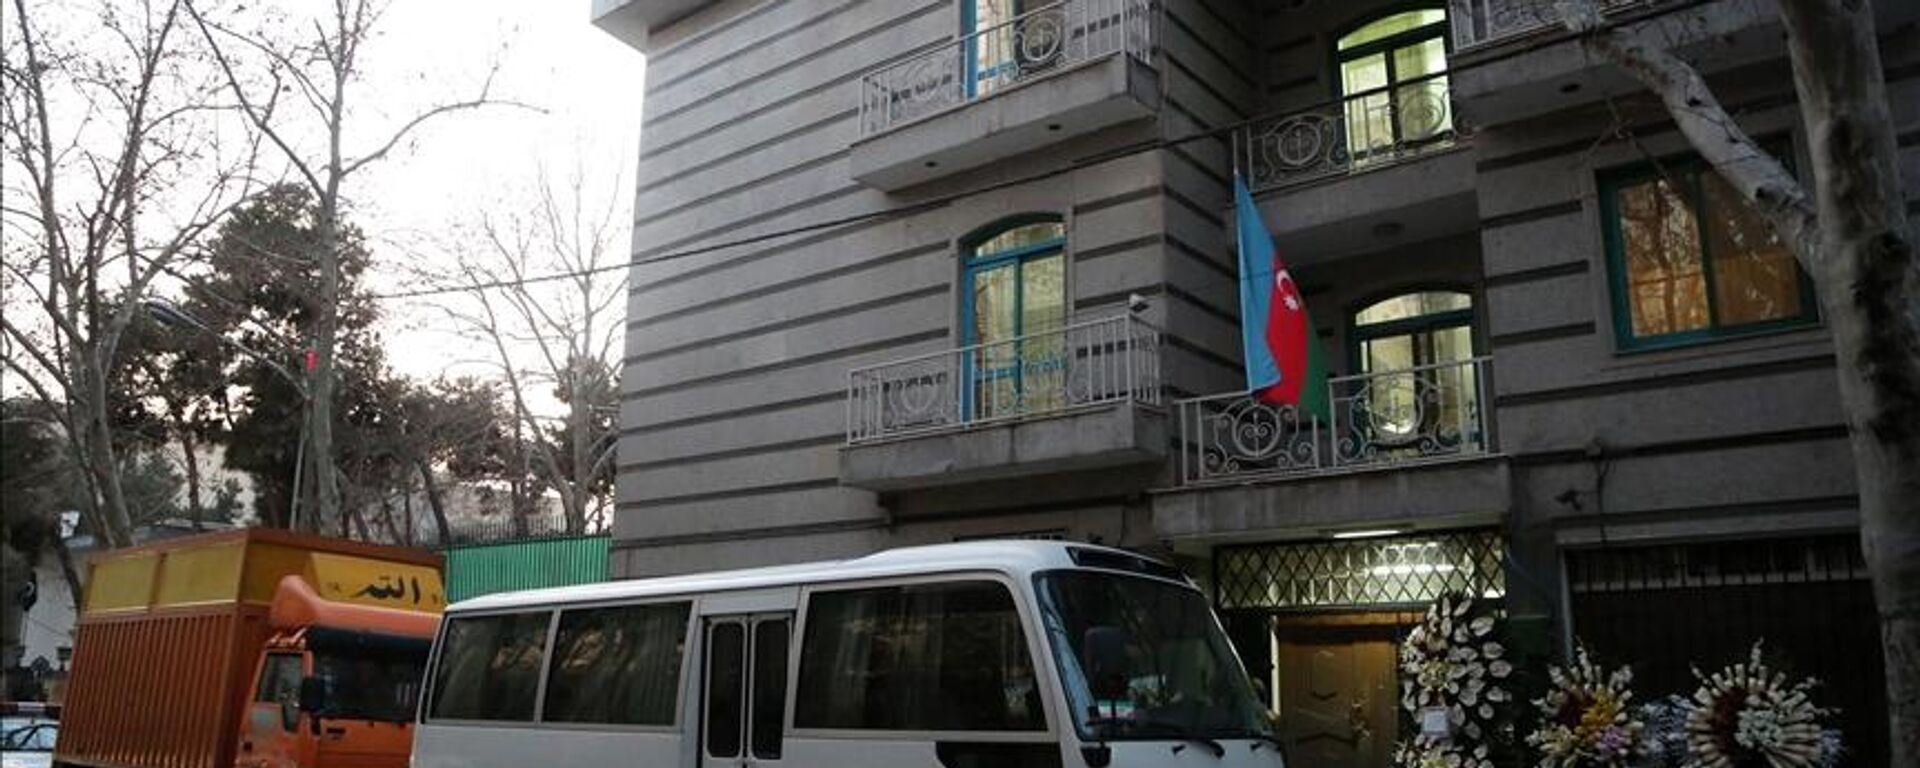 Azerbaycan'ın Tahran Büyükelçiliği'nin personeli ile aileleri ve büyükelçiliğe yapılan saldırıda hayatını kaybeden güvenlik amirinin cenazesi Bakü'ye getirildi. - Sputnik Türkiye, 1920, 01.02.2023